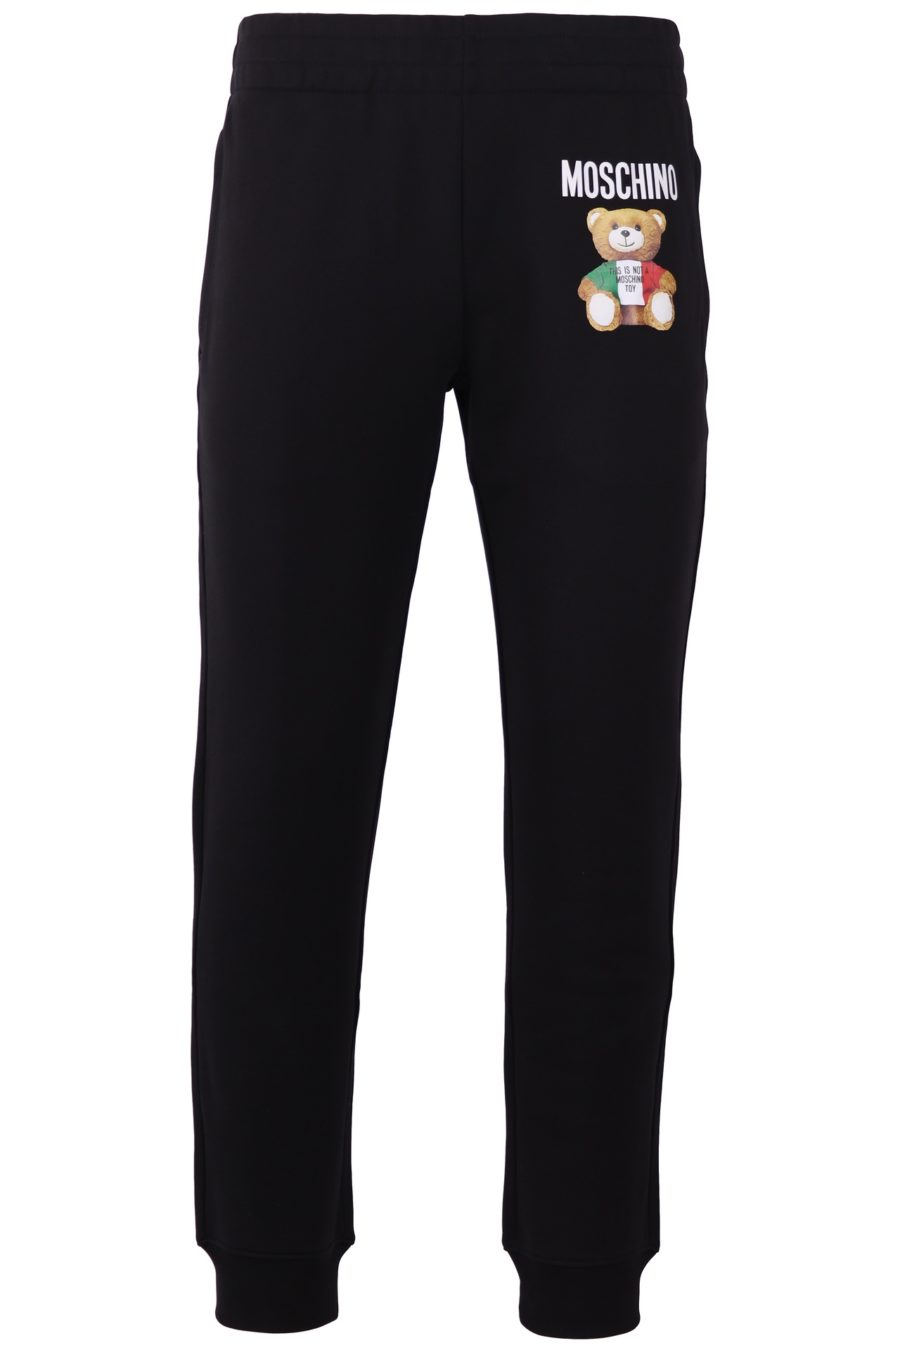 Pantalón de chándal Moschino Couture negro con oso colores Italia - 645adaf0f92d897fdee70e35445974c53b32dfc5